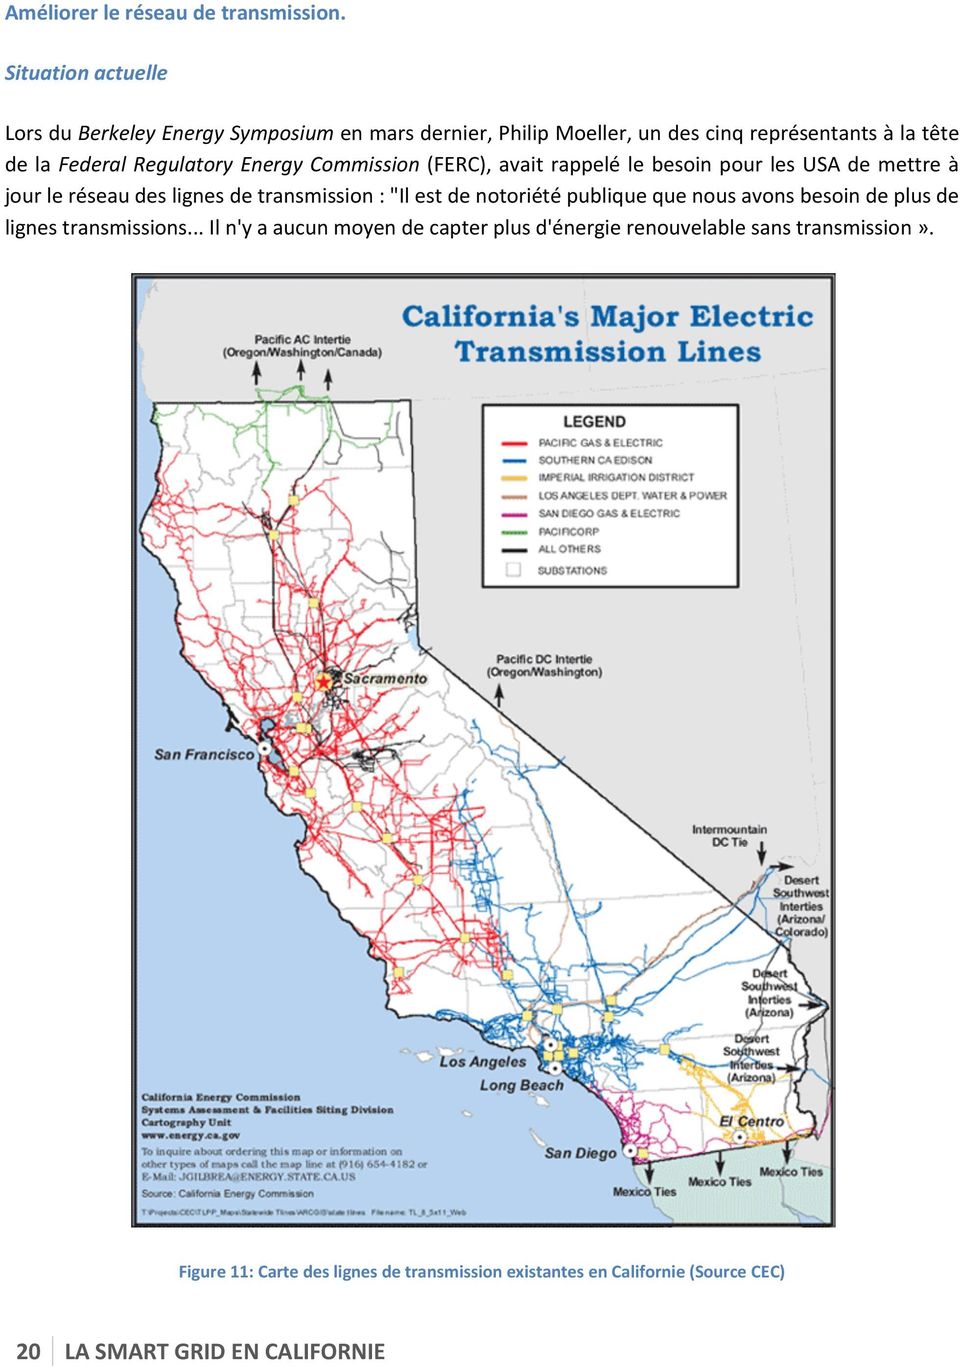 Regulatory Energy Commission (FERC), avait rappelé le besoin pour les USA de mettre à jour le réseau des lignes de transmission : "Il est de